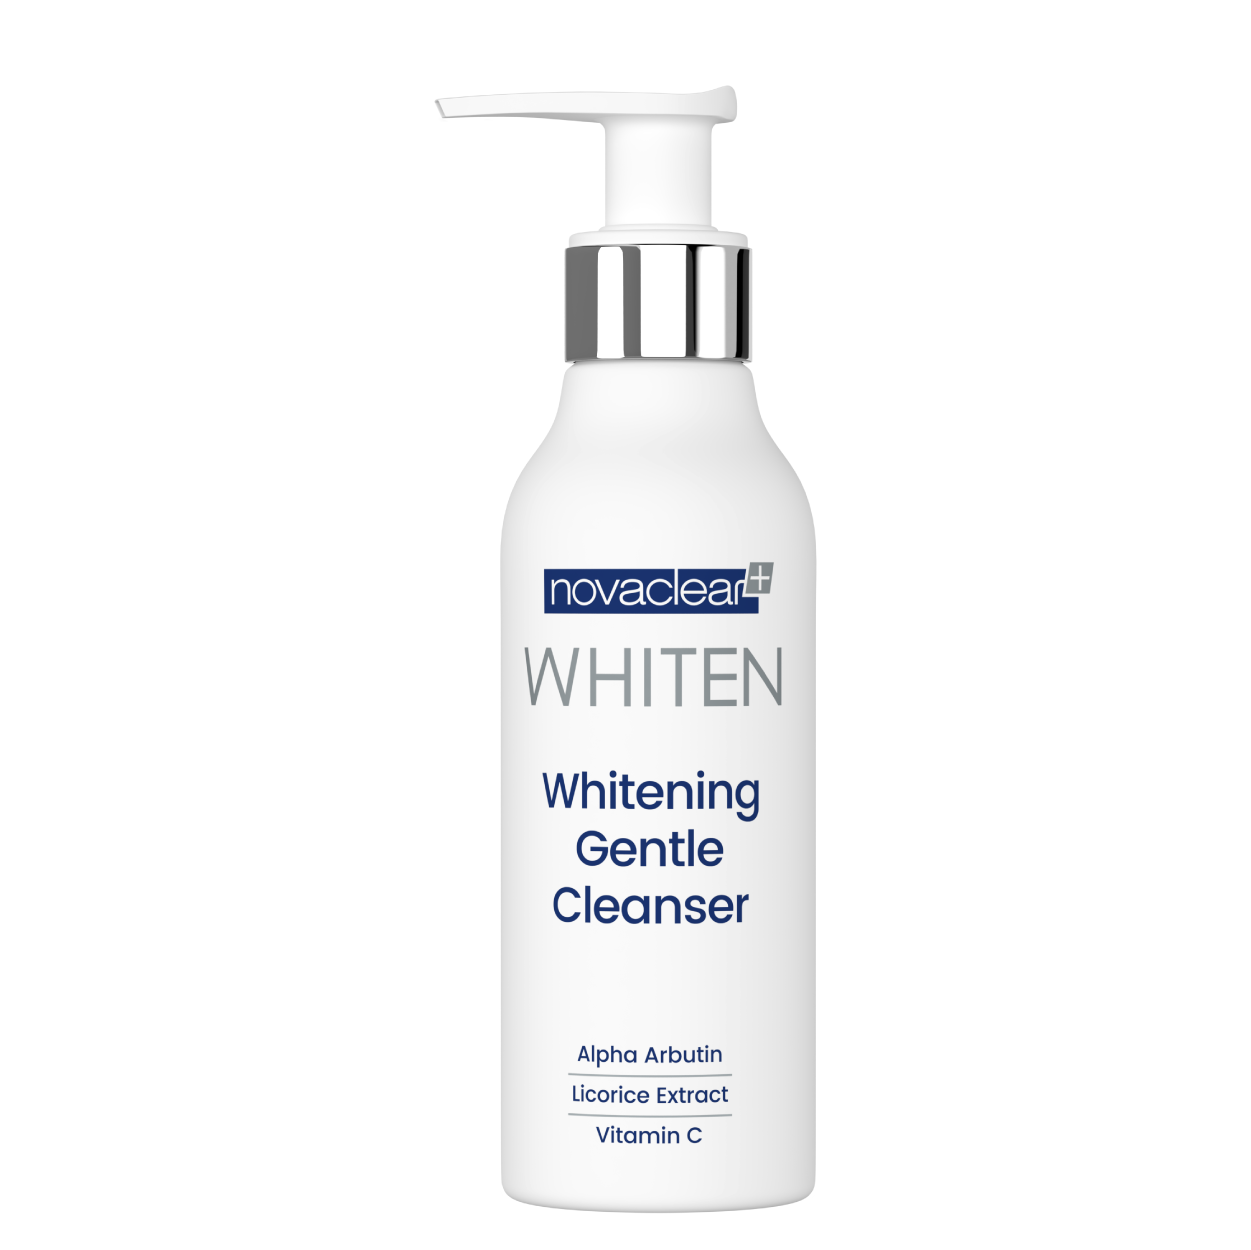 novaclear-whiten-whitening-gentle-cleanser